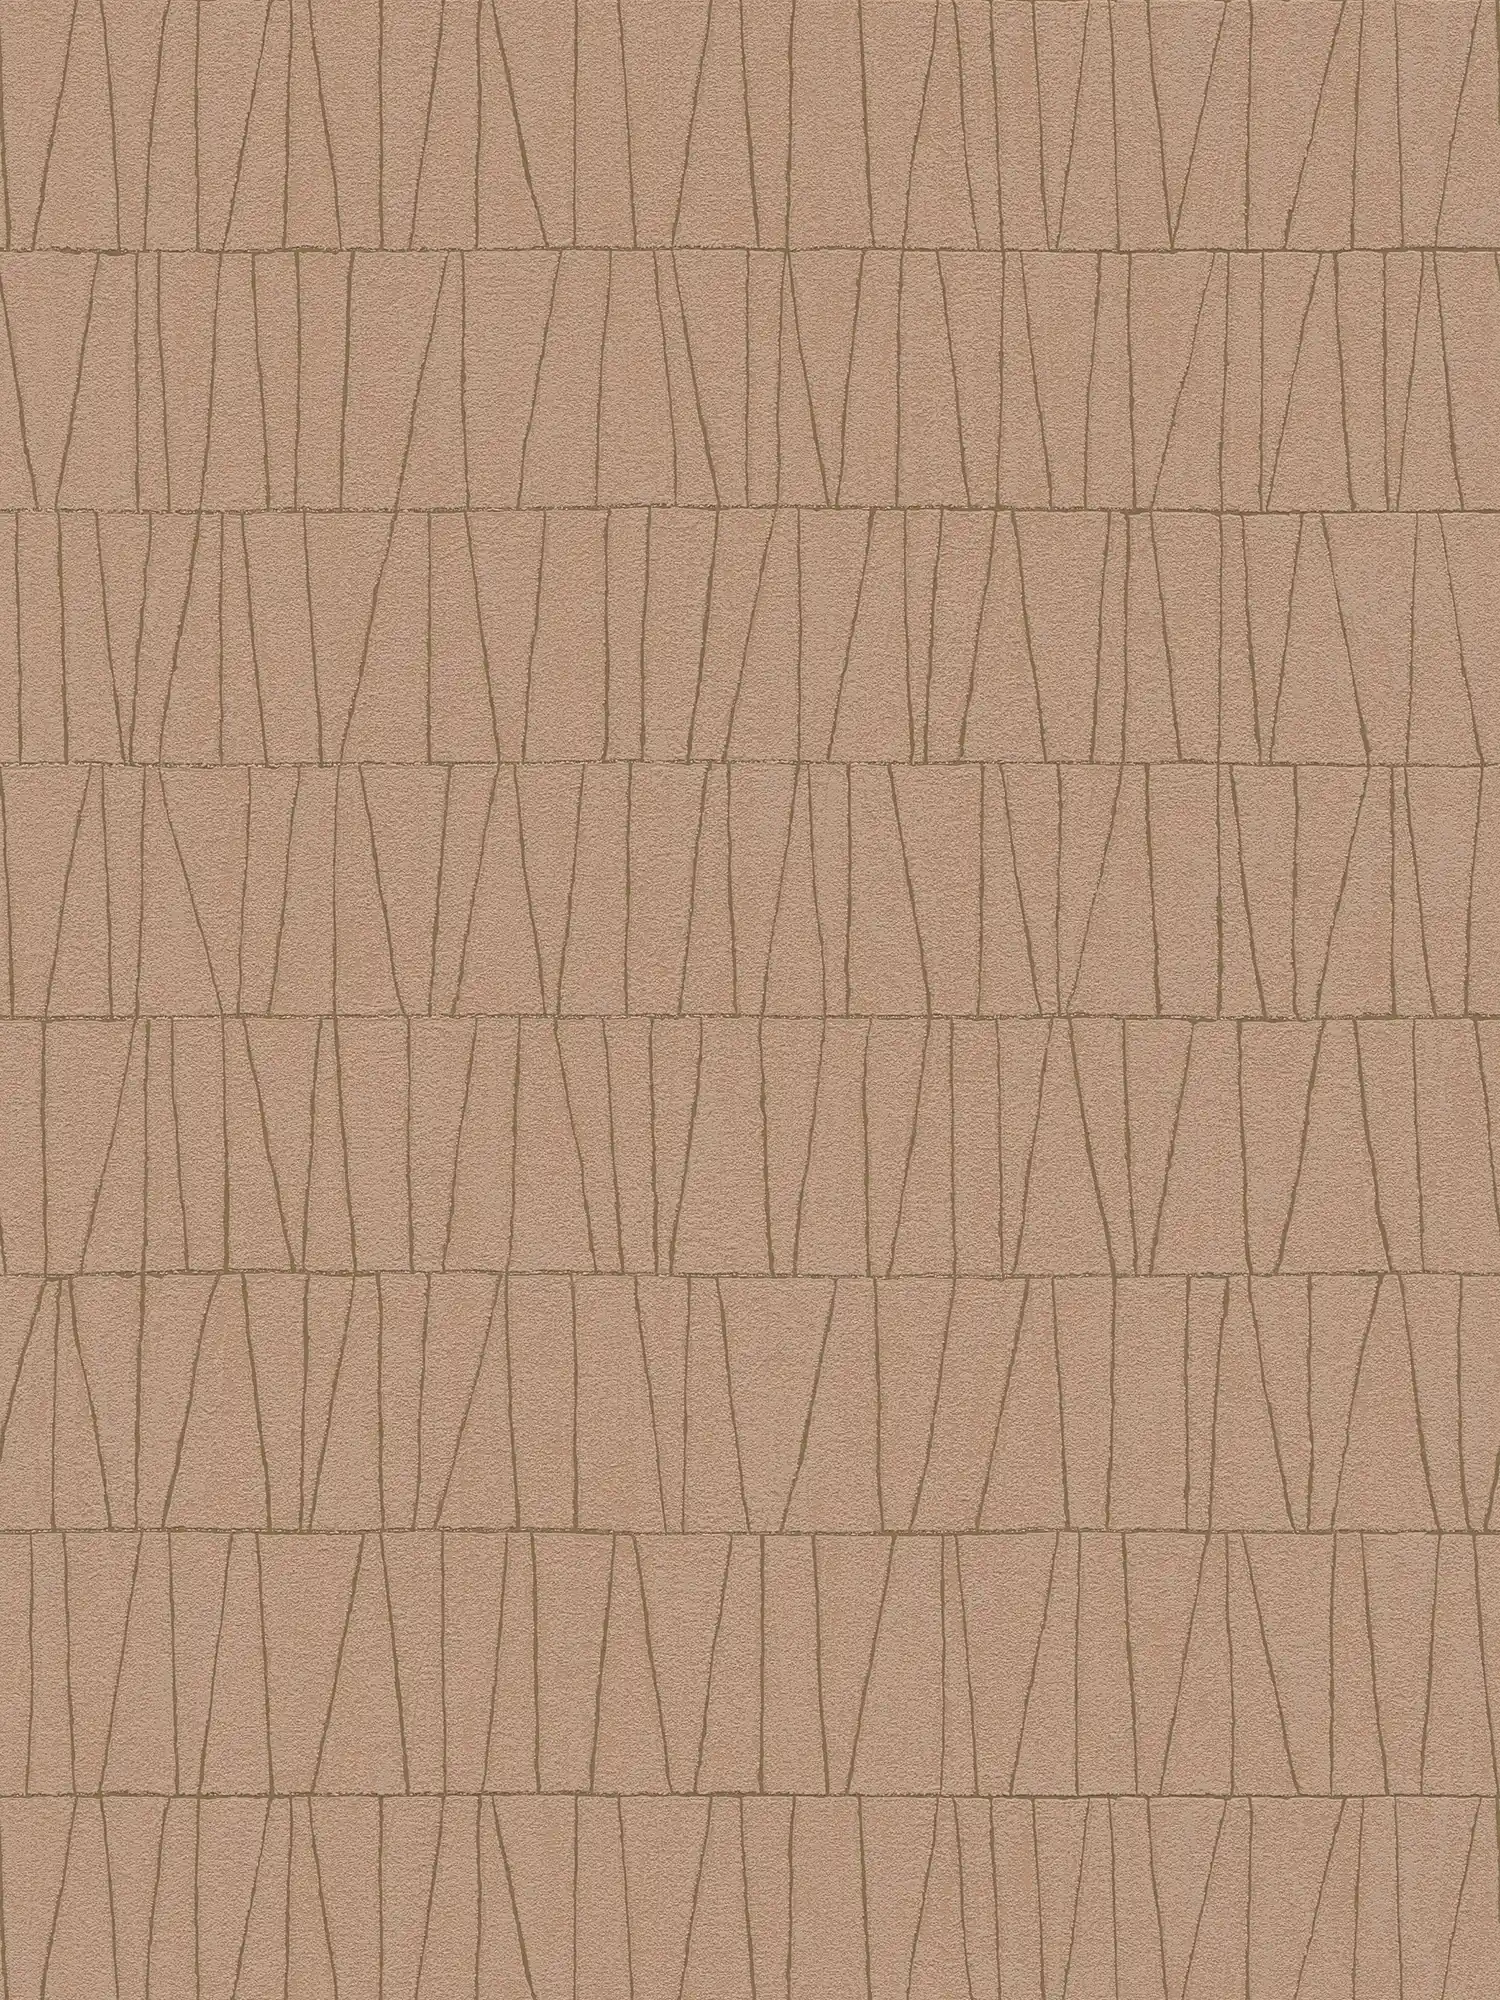 Abstract patroonbehang met lijndetails - schemerroze, goud
